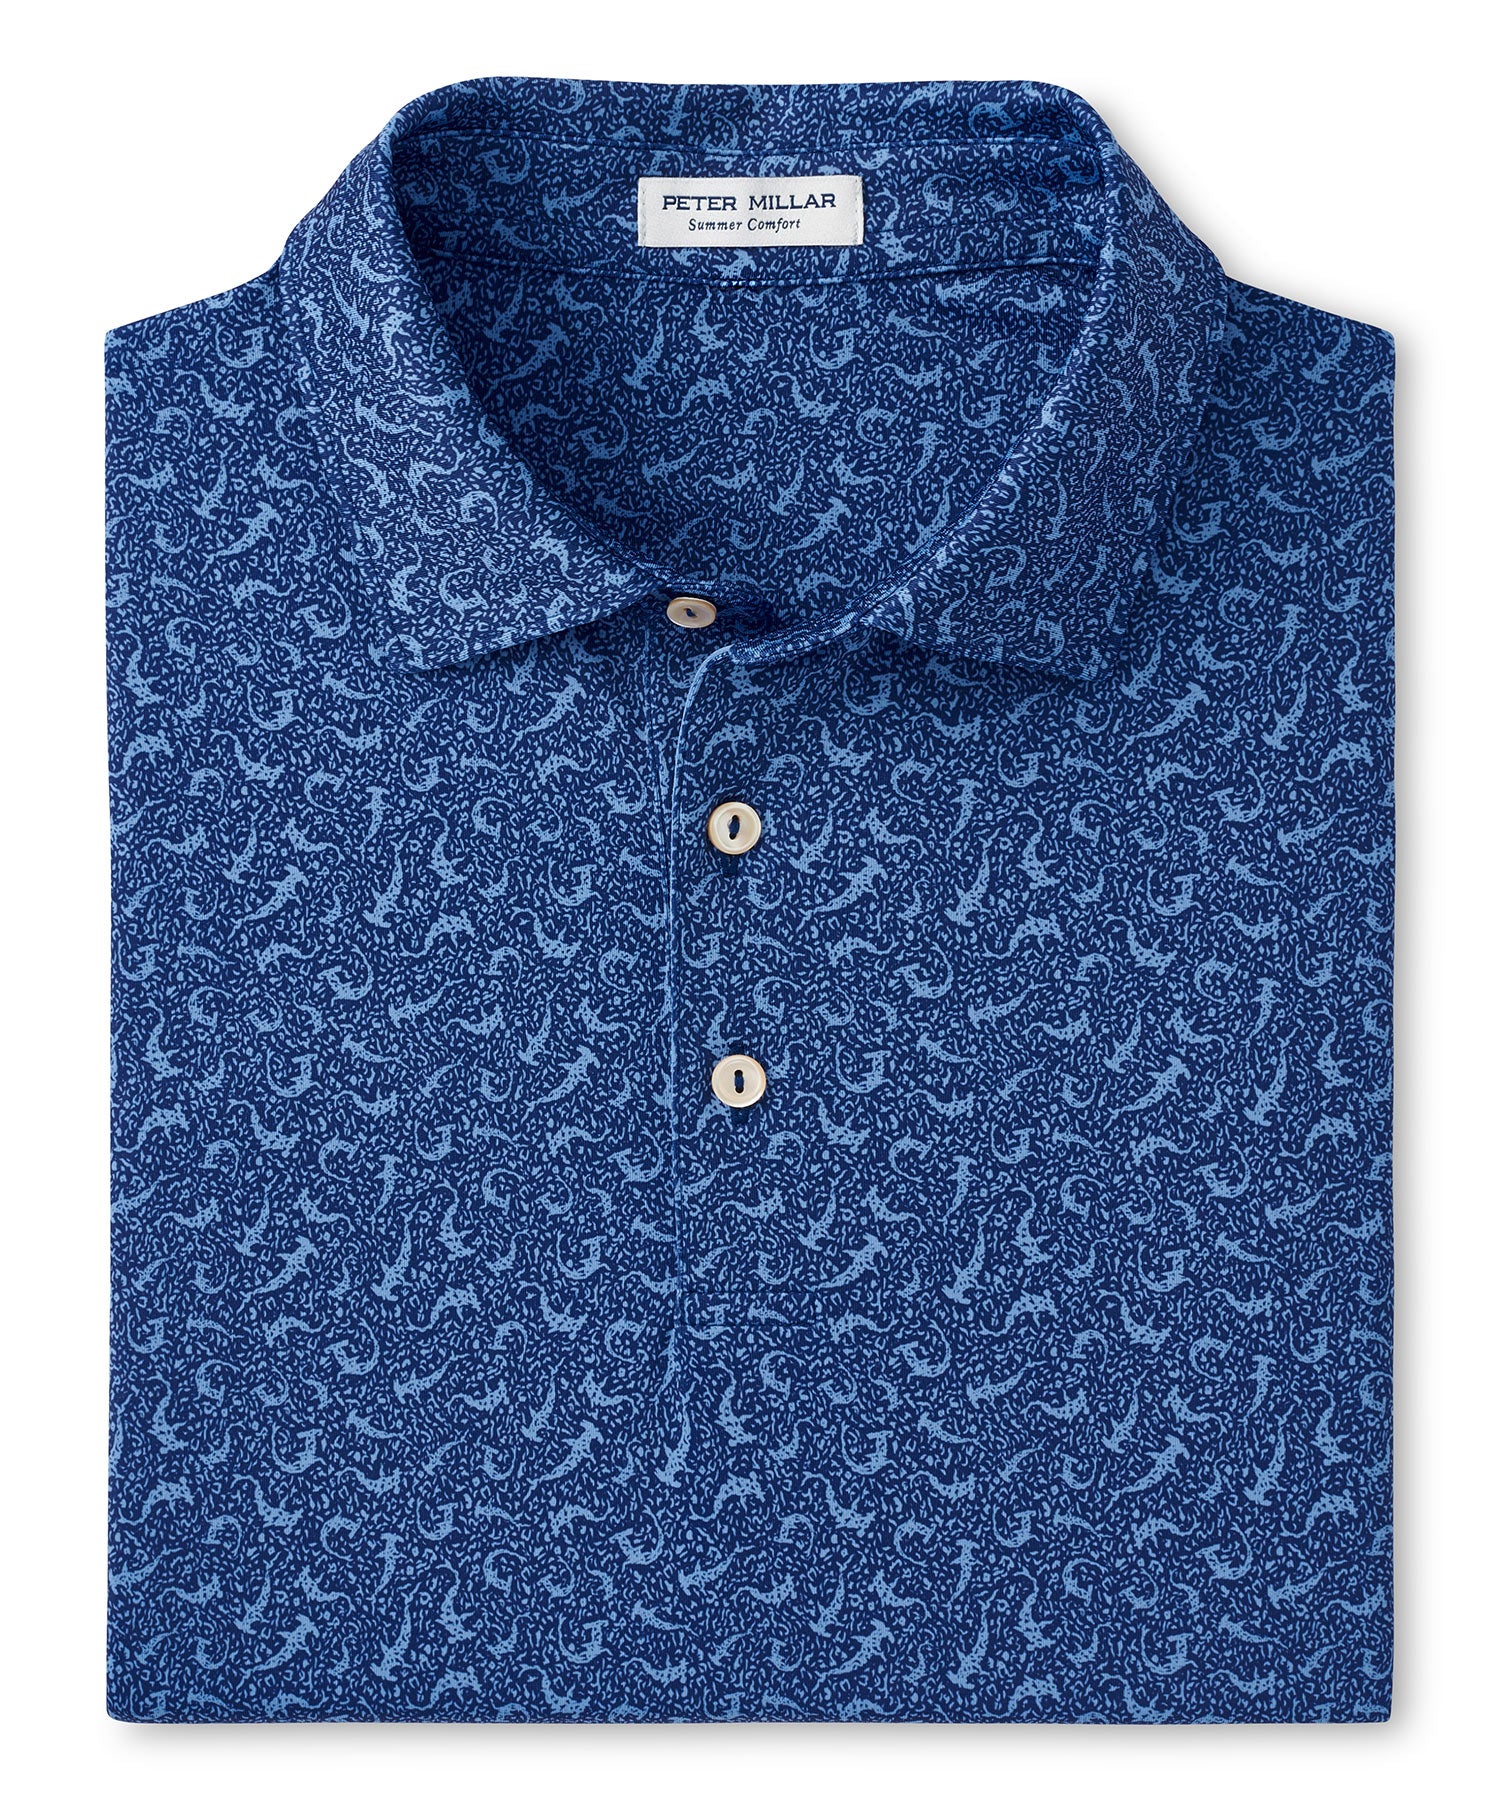 Peter Millar Short Sleeve Hammertime Print Polo Knit Shirt, Men's Big & Tall